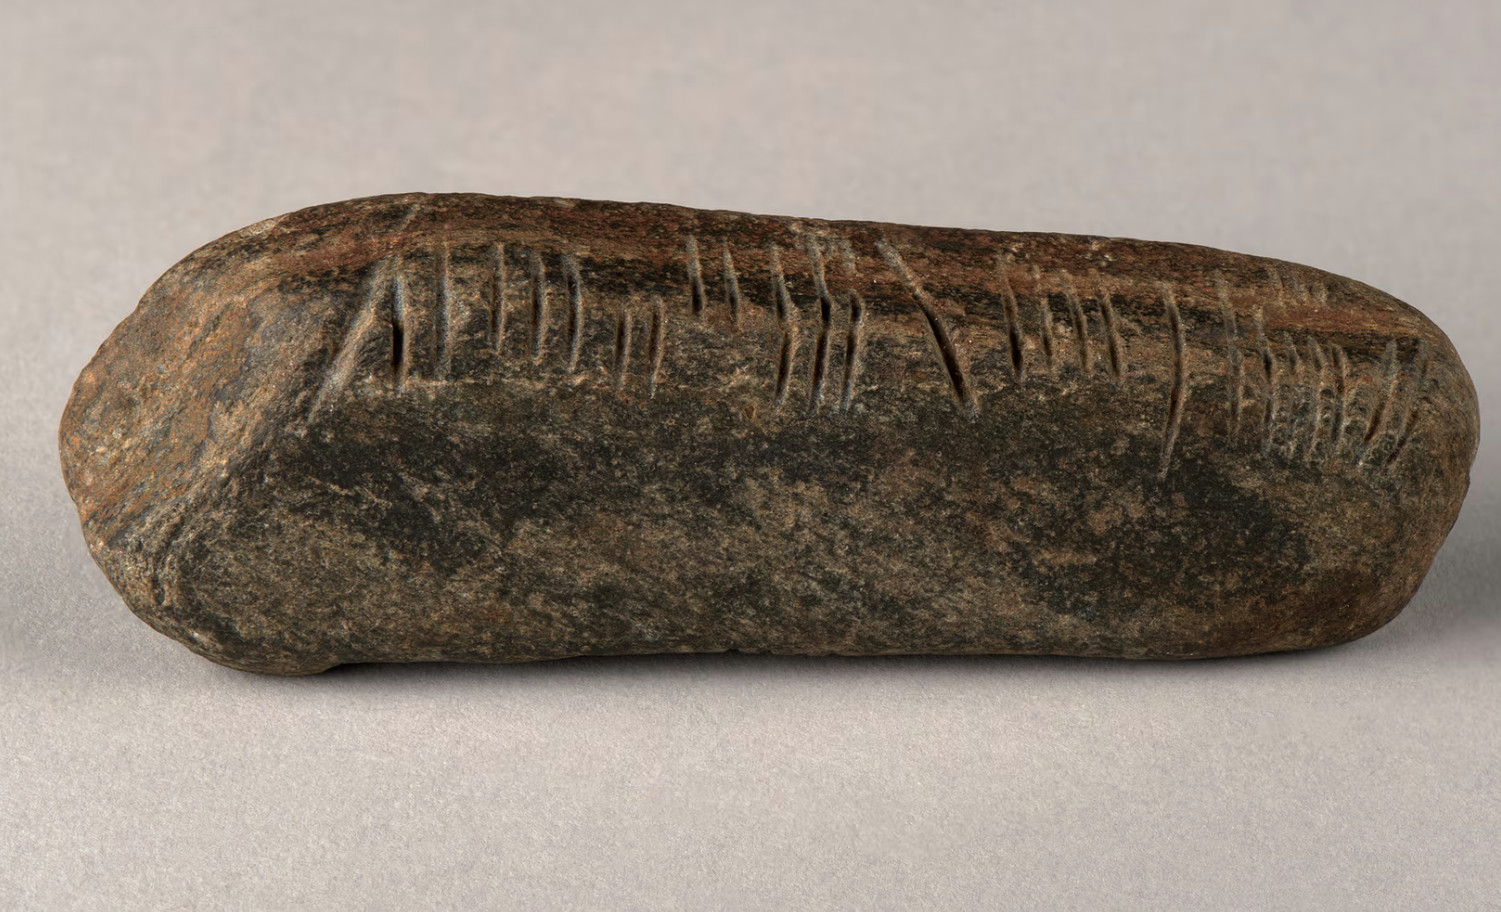 Η σπάνια πέτρα με την αρχαία γραφή. [Credit: The Herbert Art Gallery and Museum]